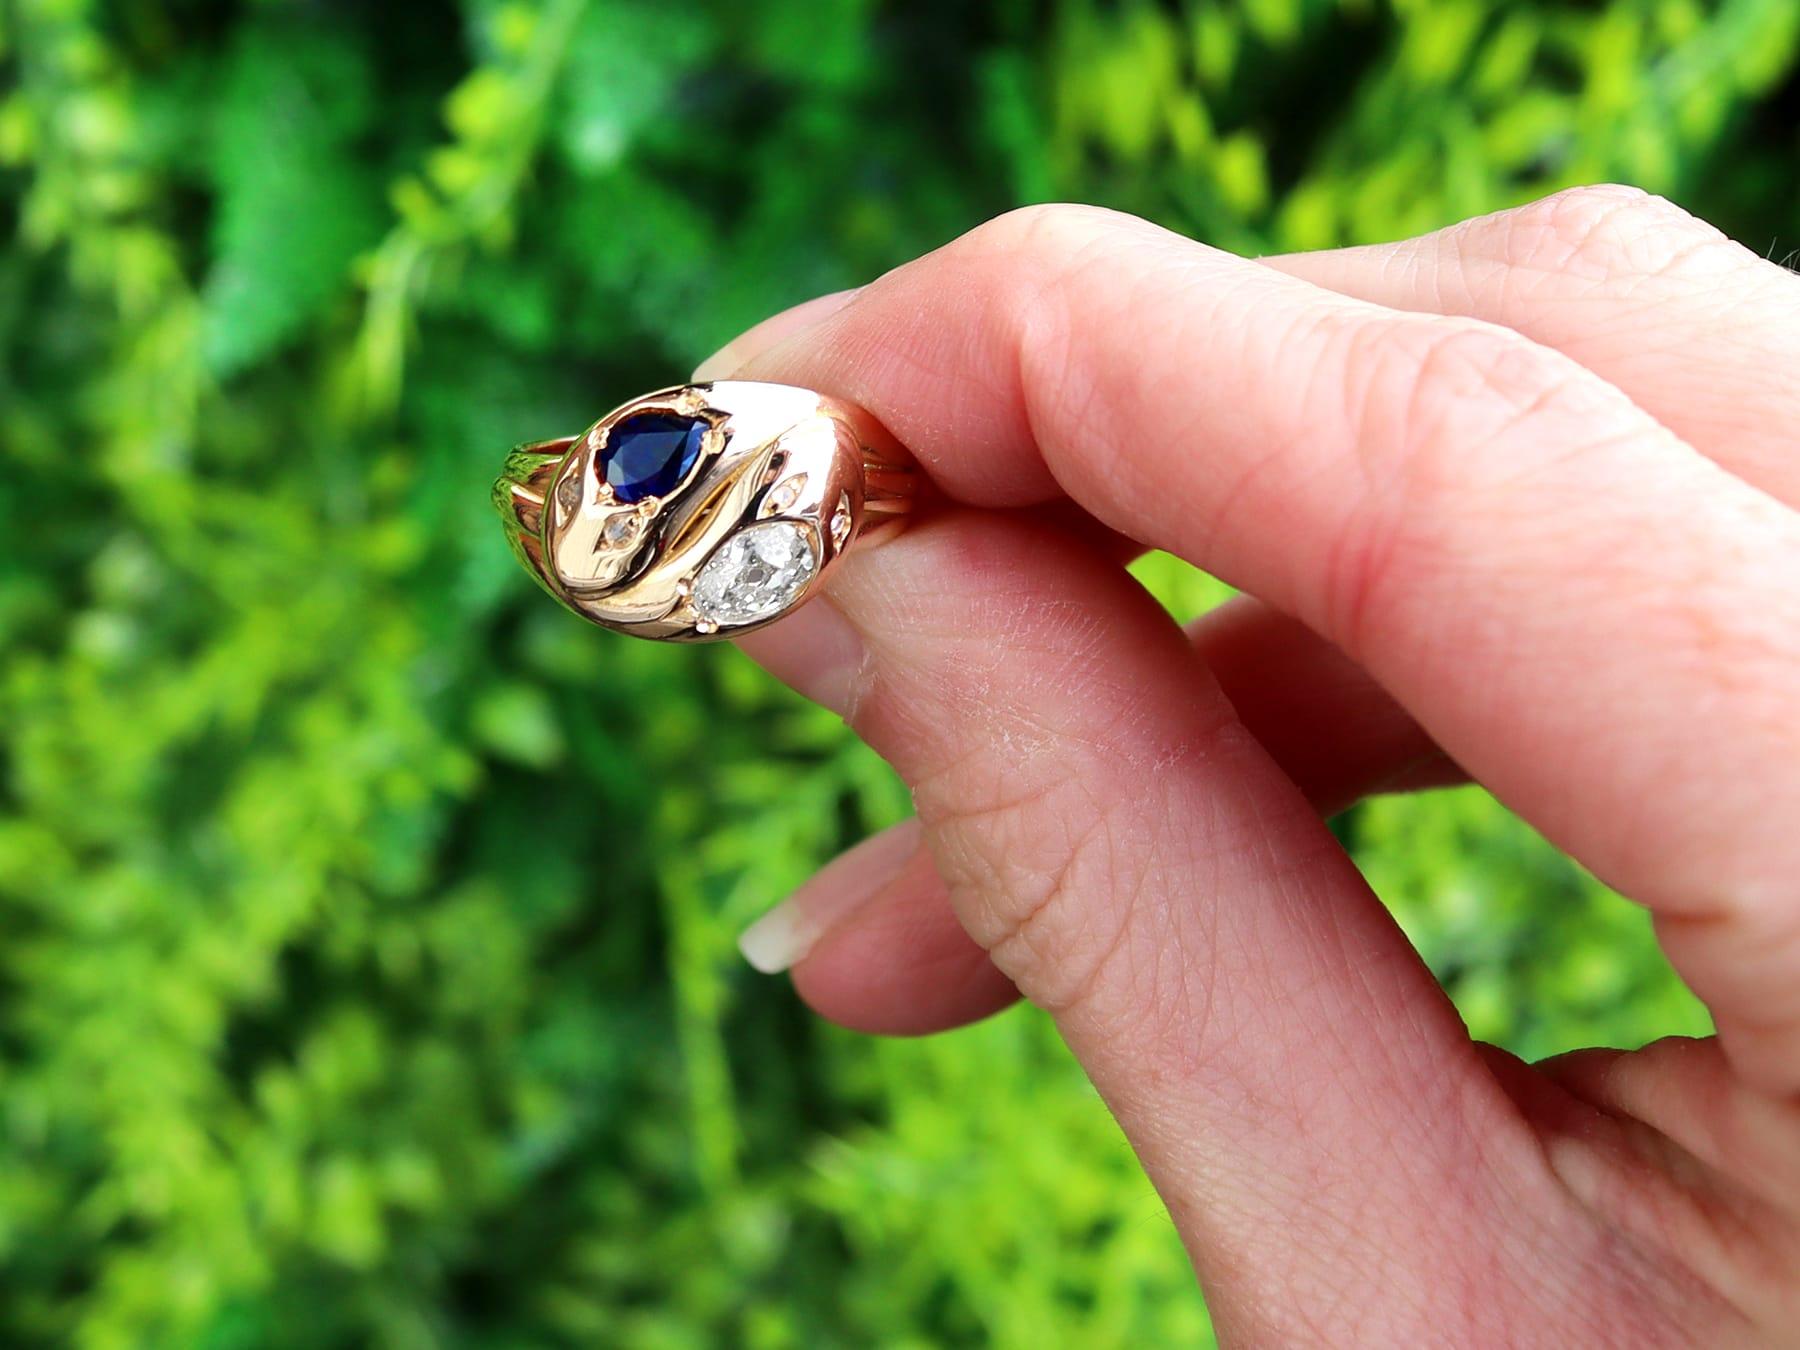 Impresionante anillo antiguo de oro amarillo de 18 quilates con un zafiro de 0,63 quilates y un diamante de 0,77 quilates; forma parte de nuestras diversas colecciones de joyas antiguas

Este asombroso, fino e impresionante anillo victoriano antiguo